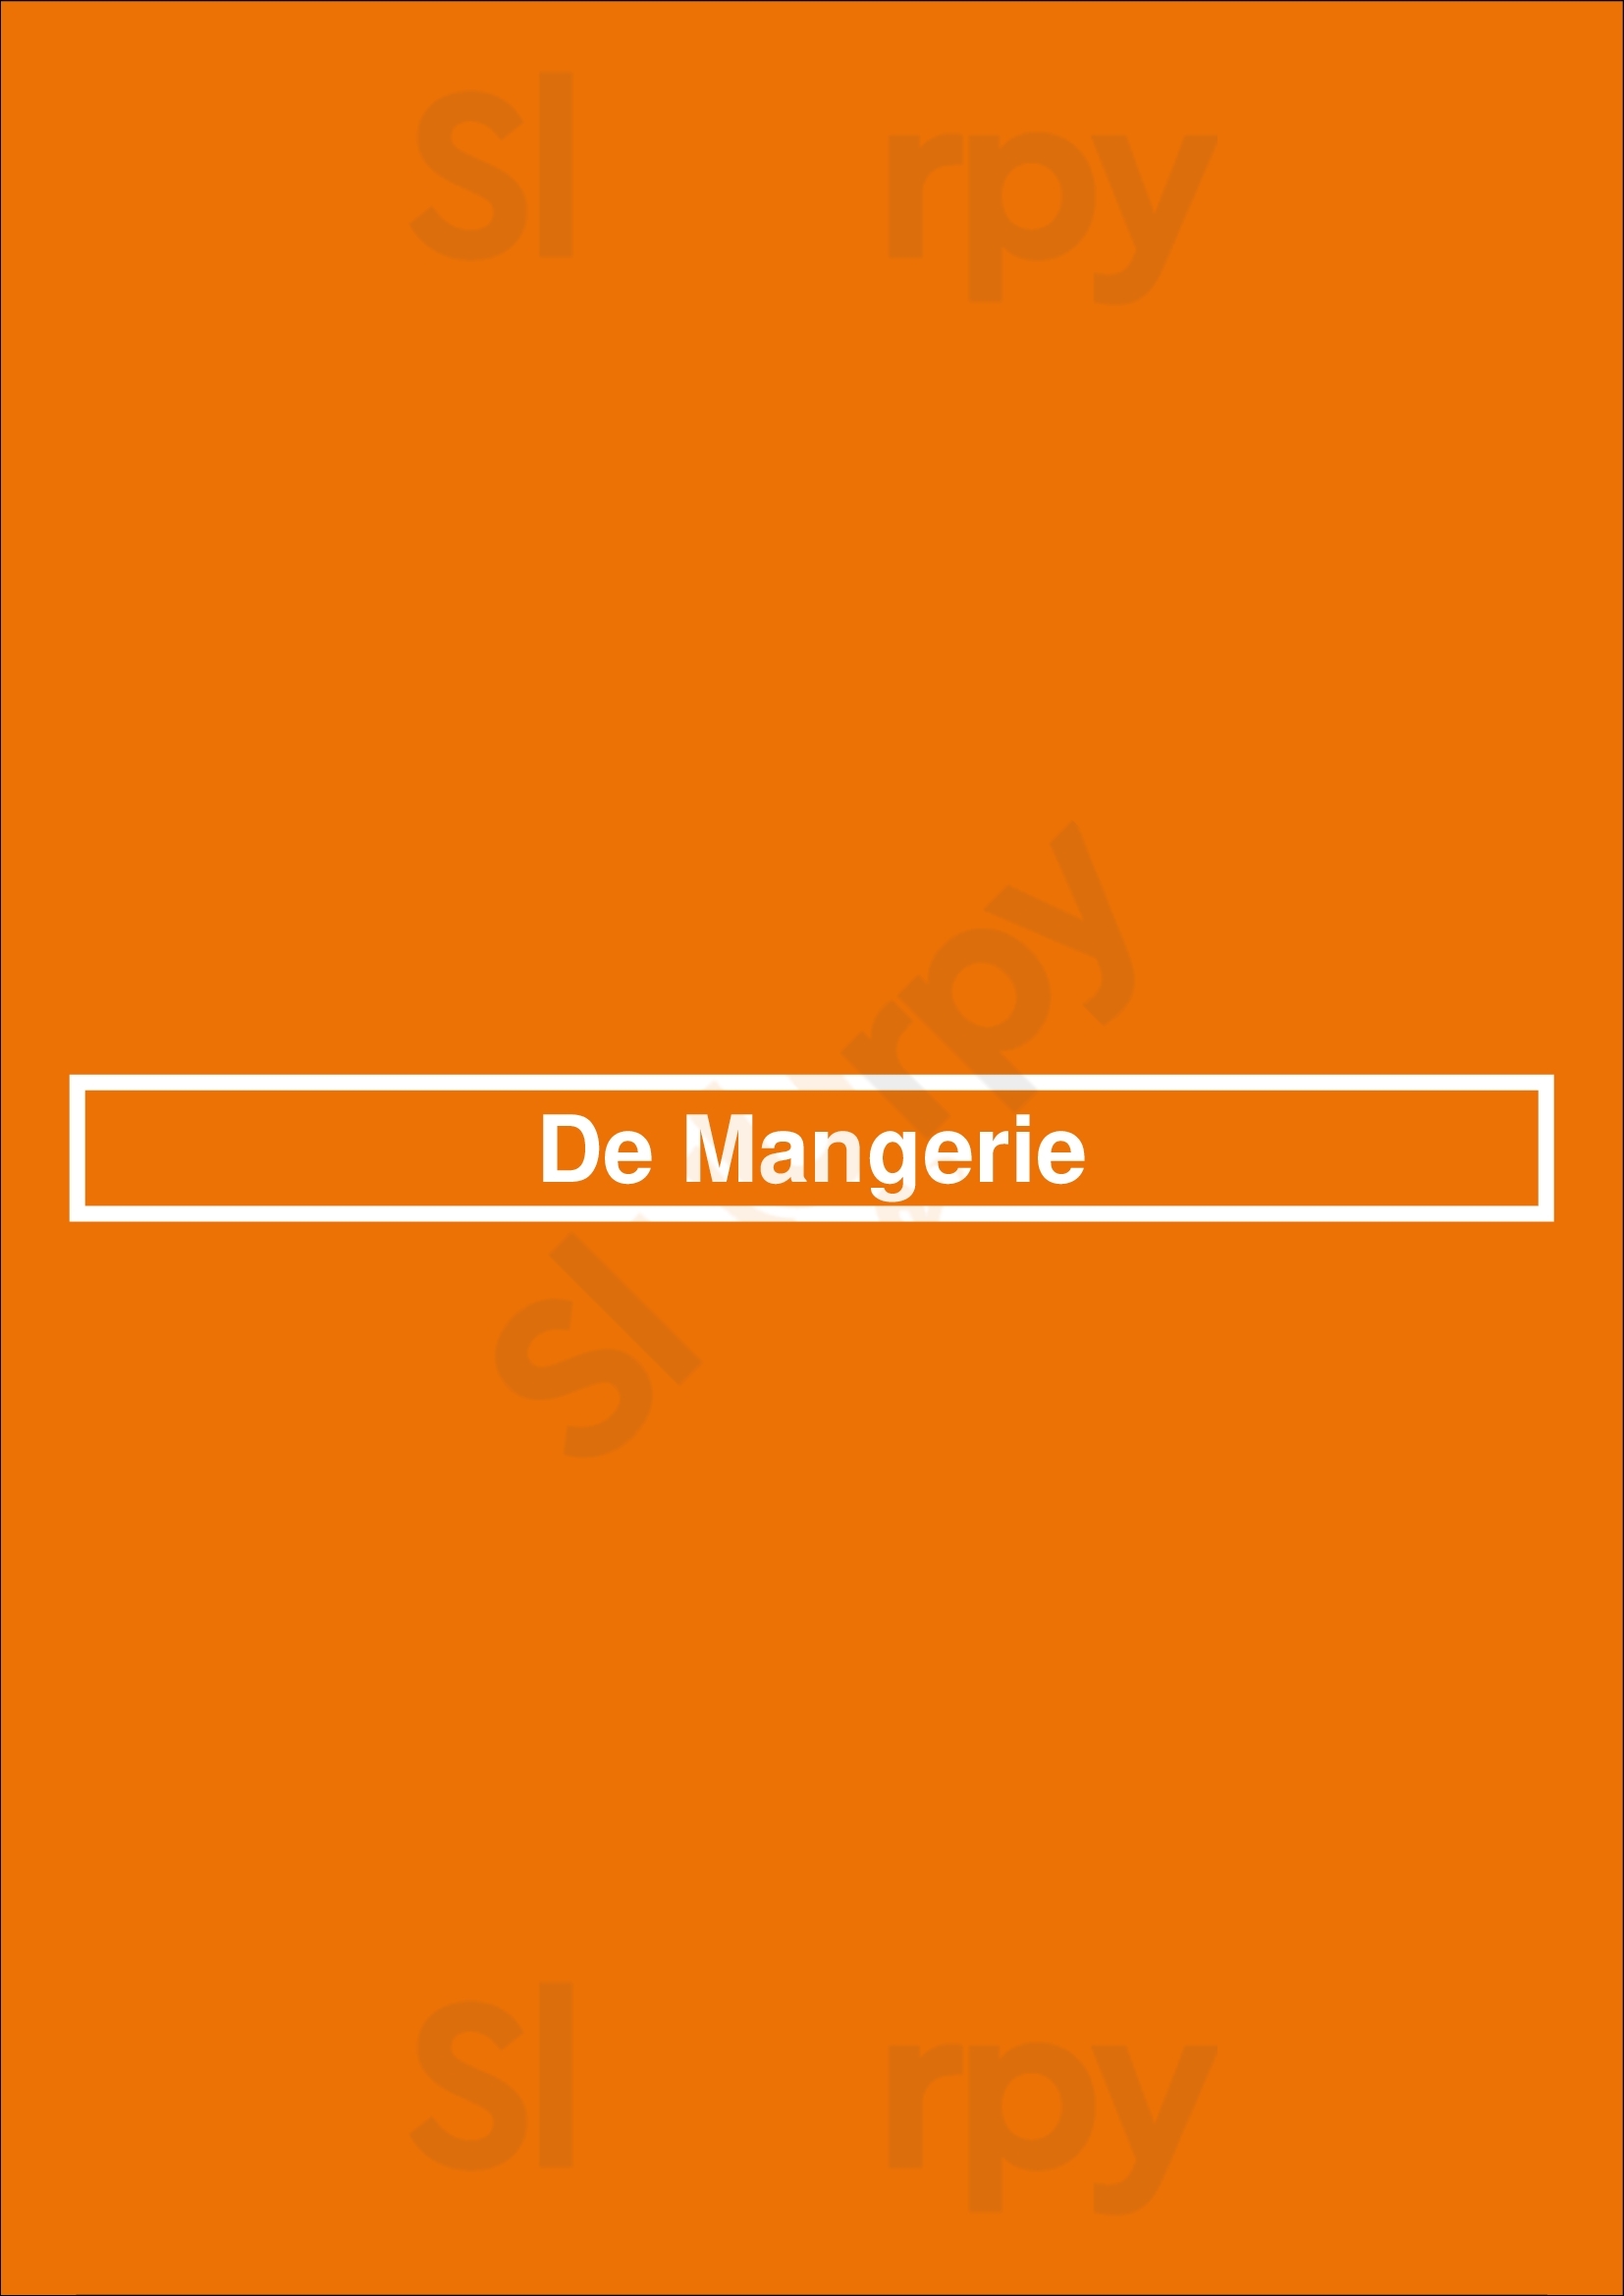 De Mangerie Hooglanderveen Menu - 1